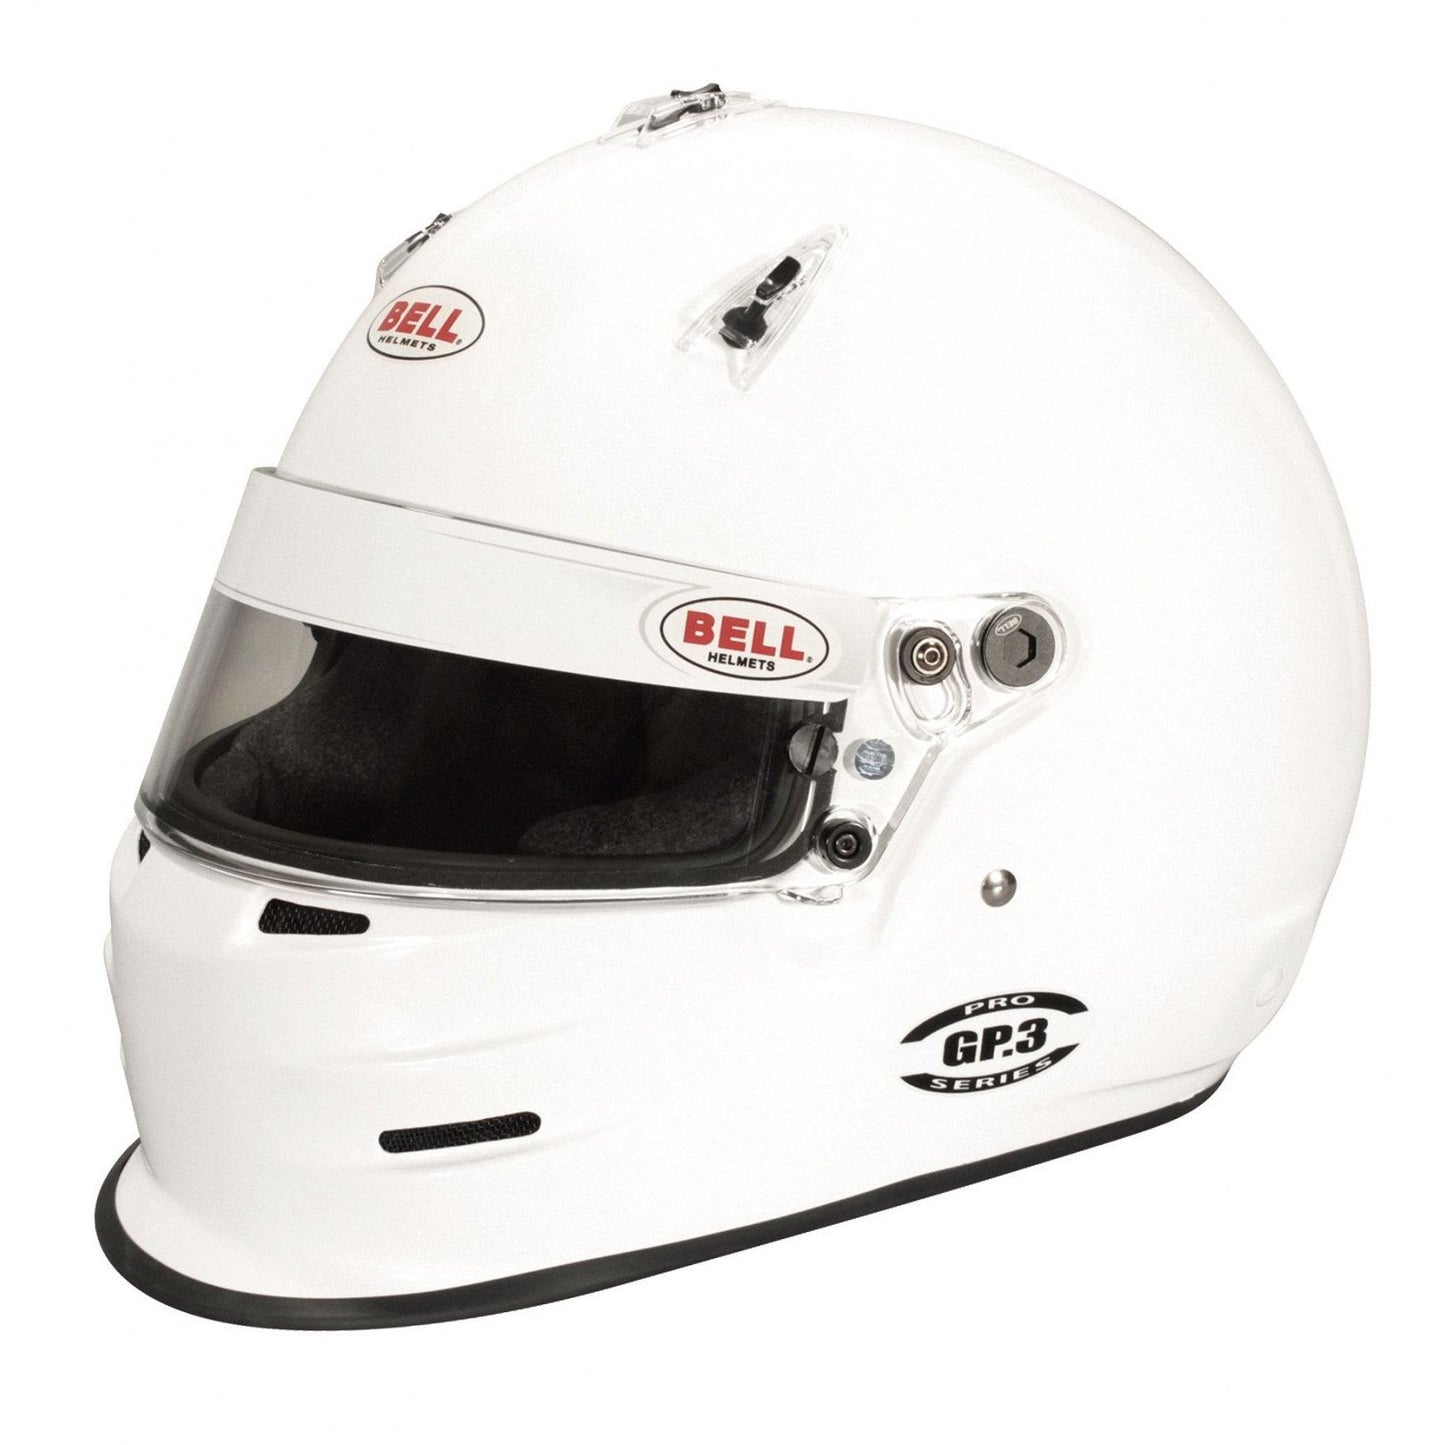 Bell GP3 White Racing Helmet - 59 cm-BEL-1313003-Helmets-Bell-JDMuscle